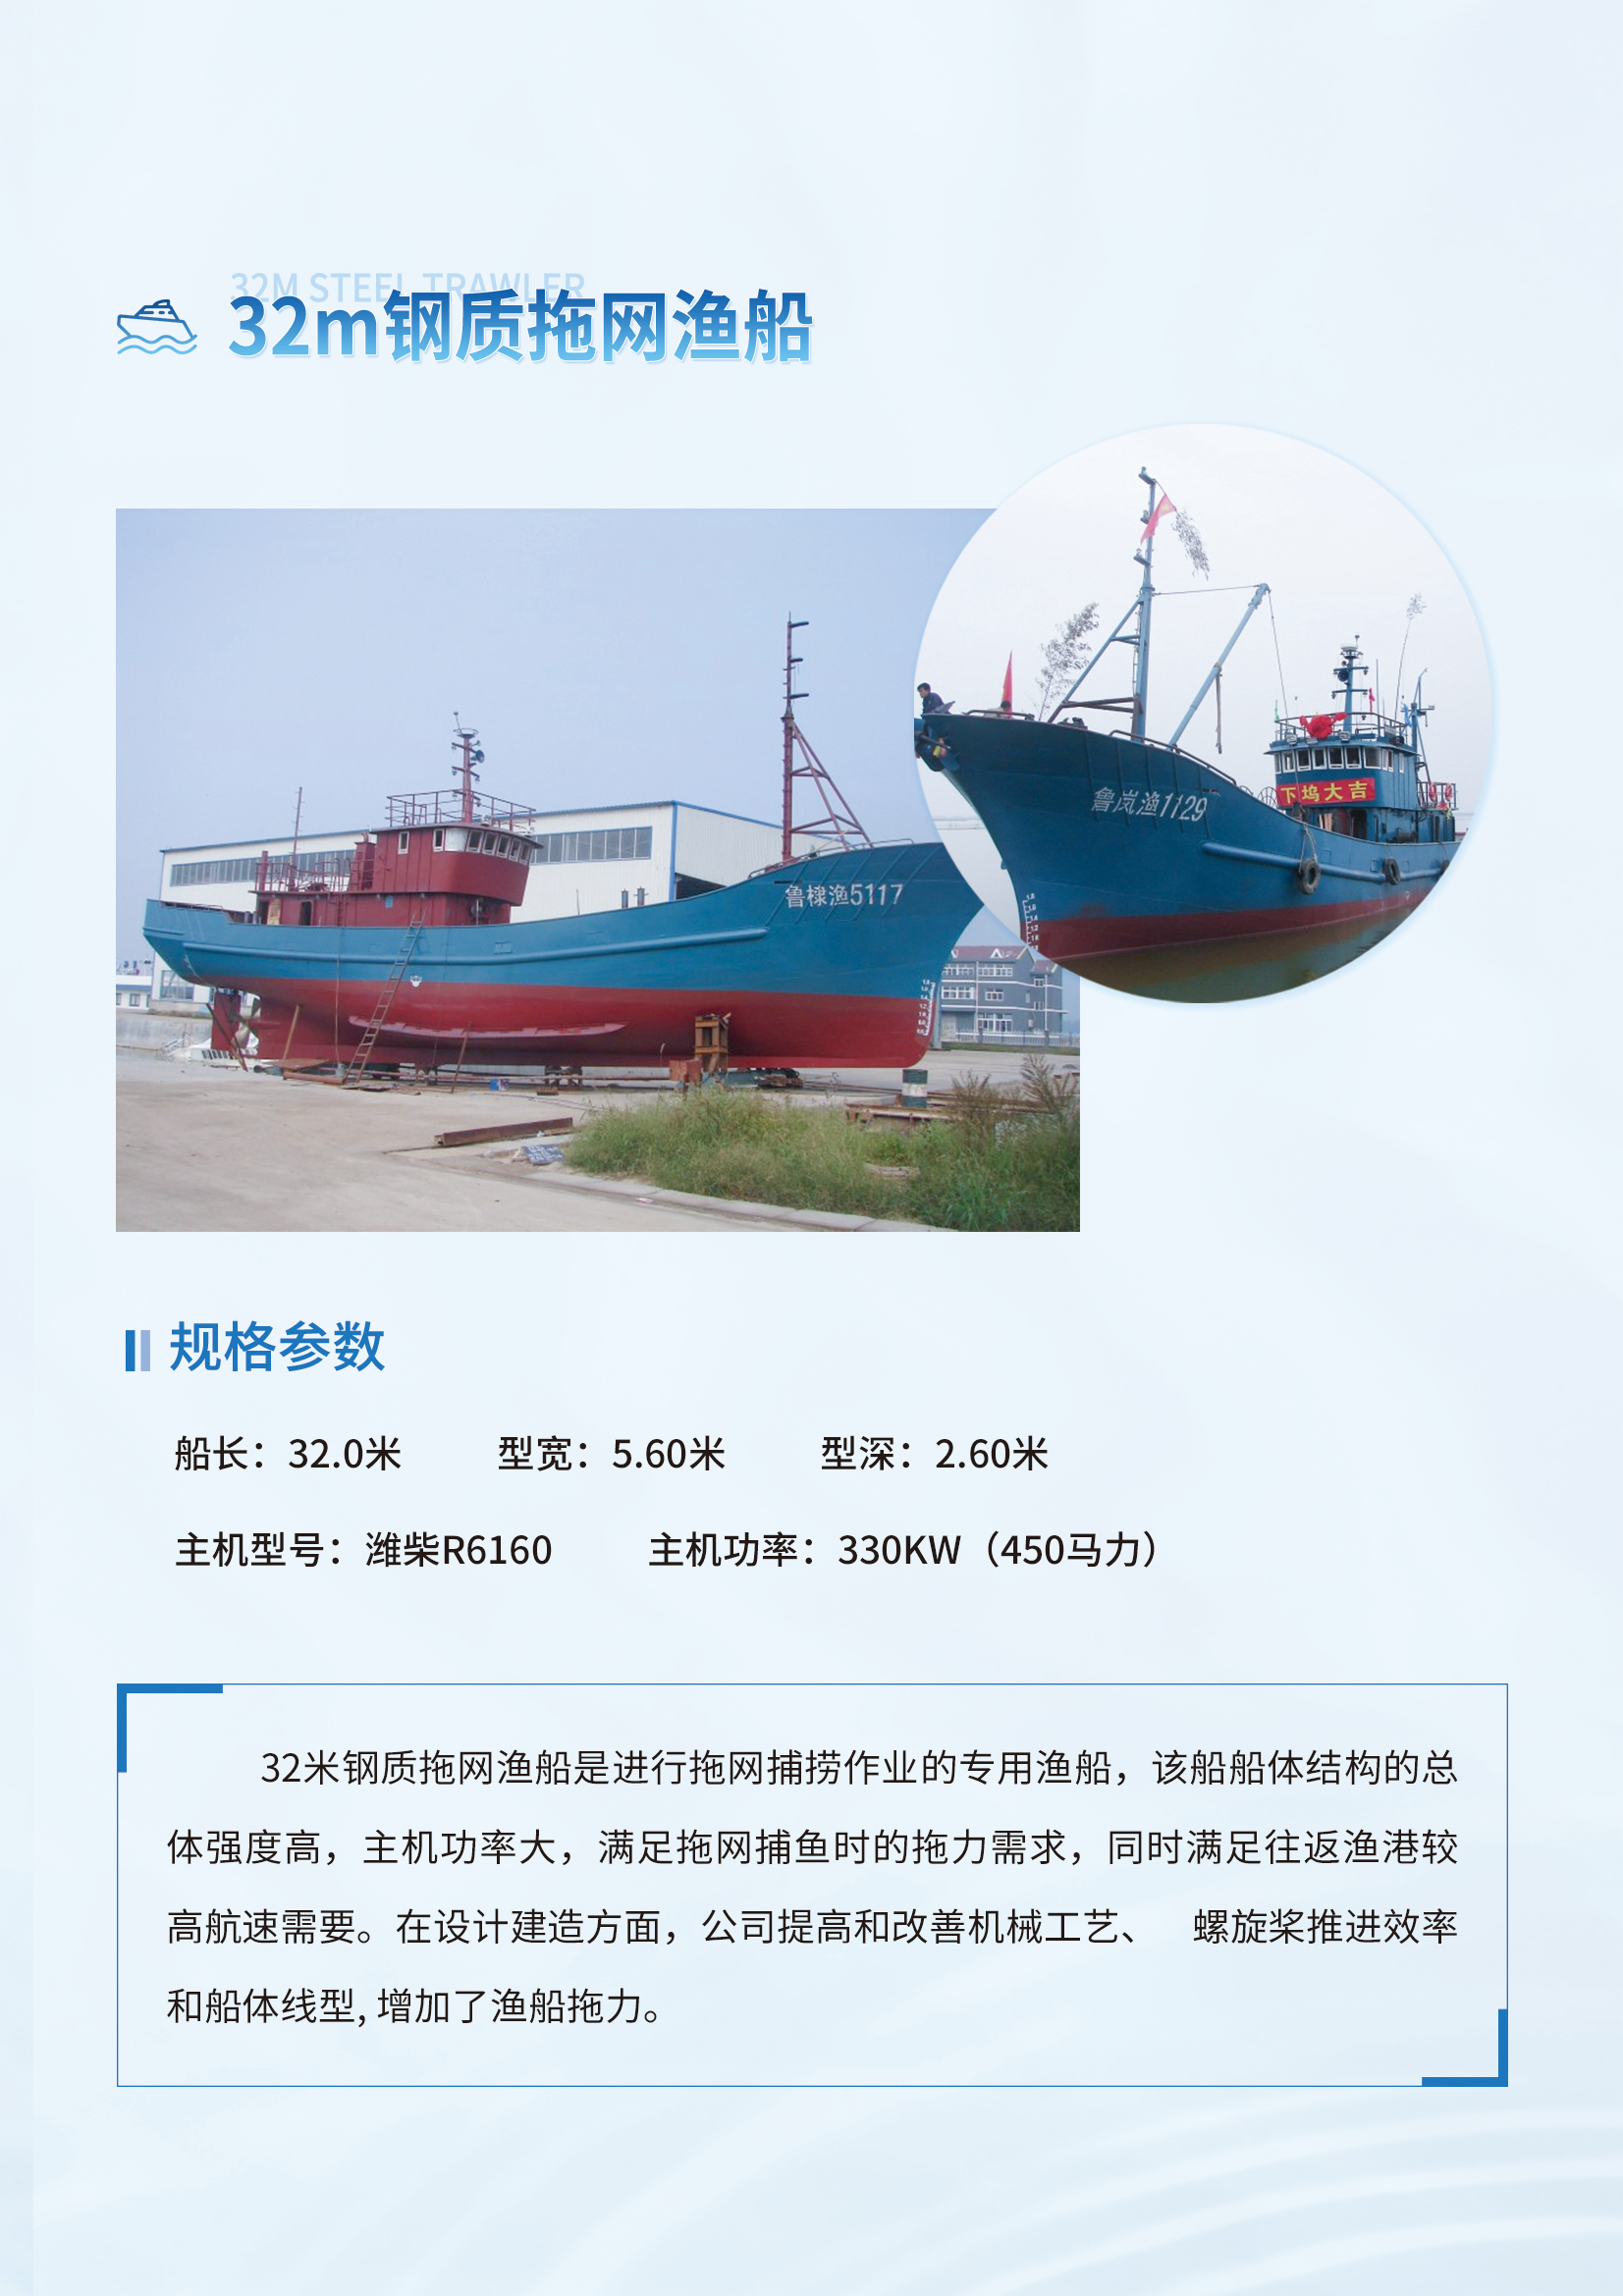 自航反鏟式挖泥船-32m鋼質拖網漁船_02.png